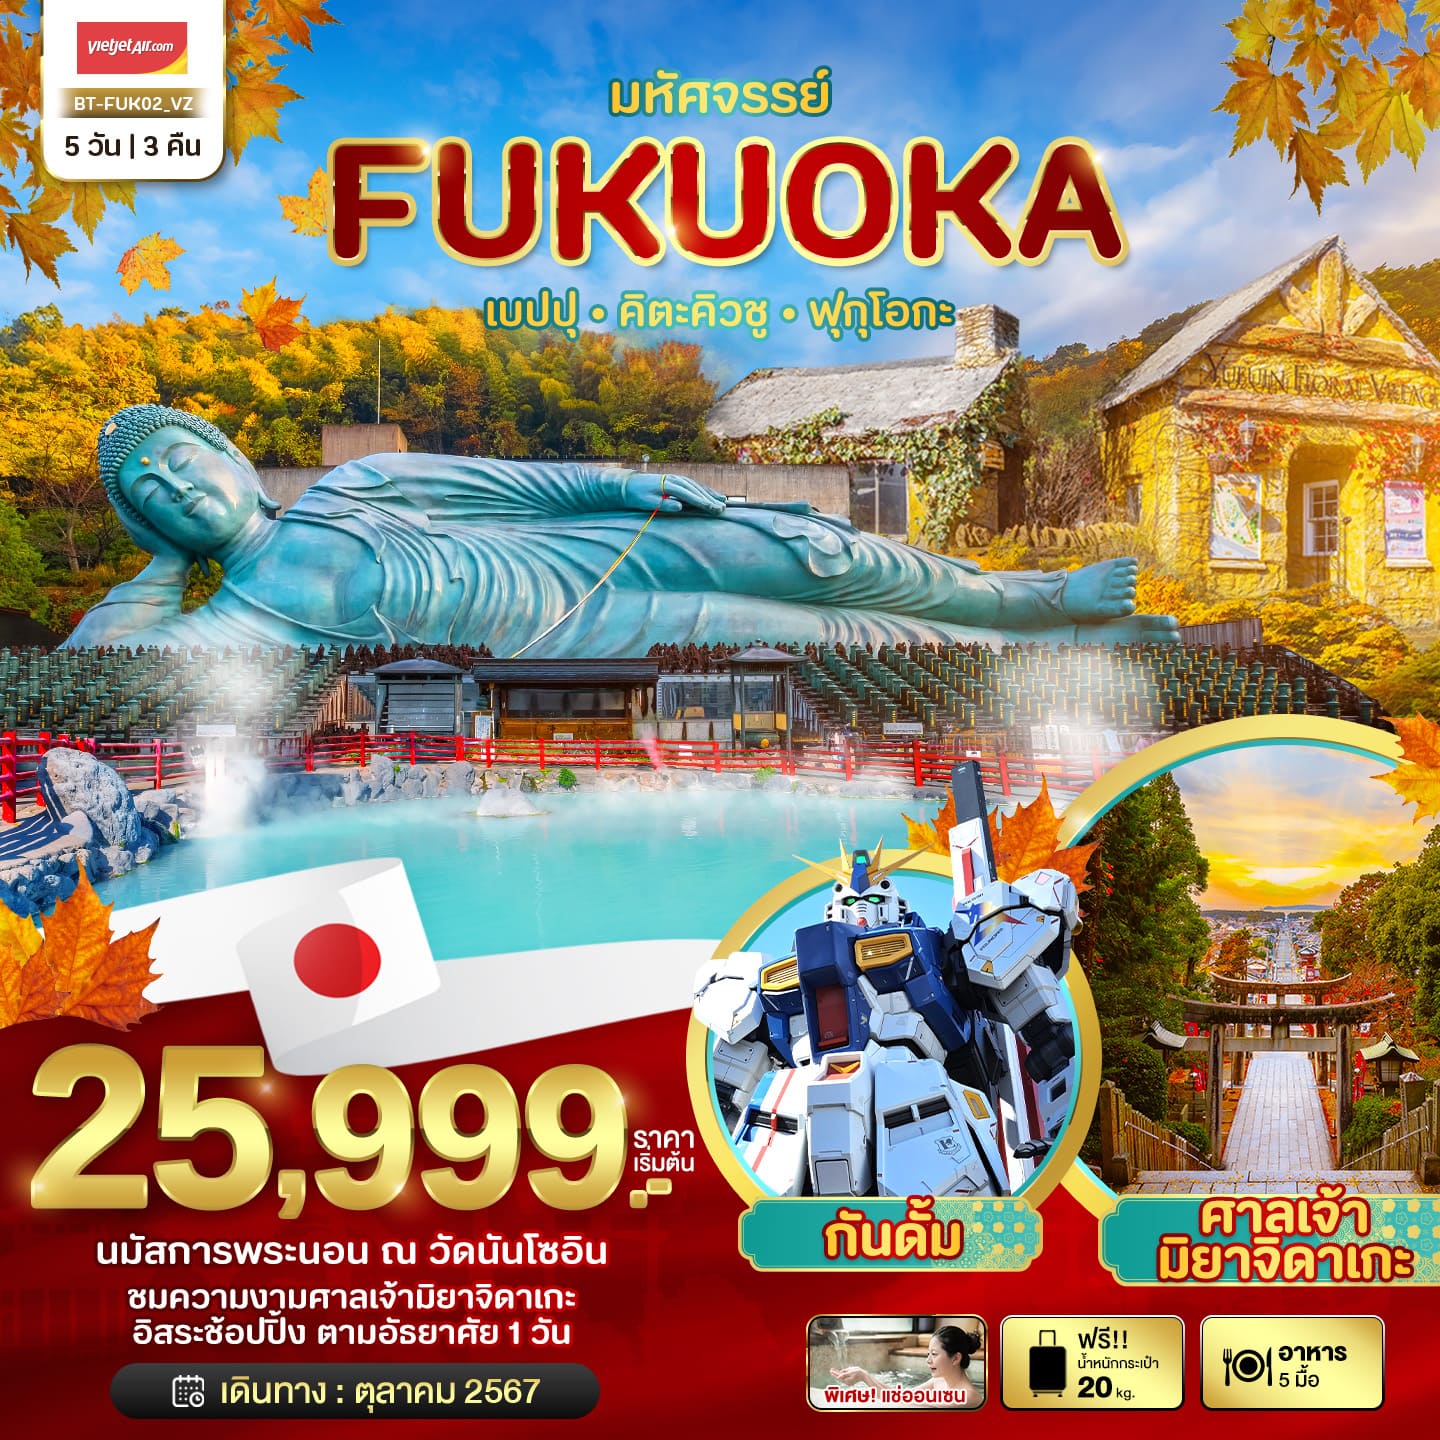 ทัวร์ญี่ปุ่น มหัศจรรย์ FUKUOKA เบปปุ คิตะคิวชู ฟรีเดย์ 5วัน 3คืน (VZ)